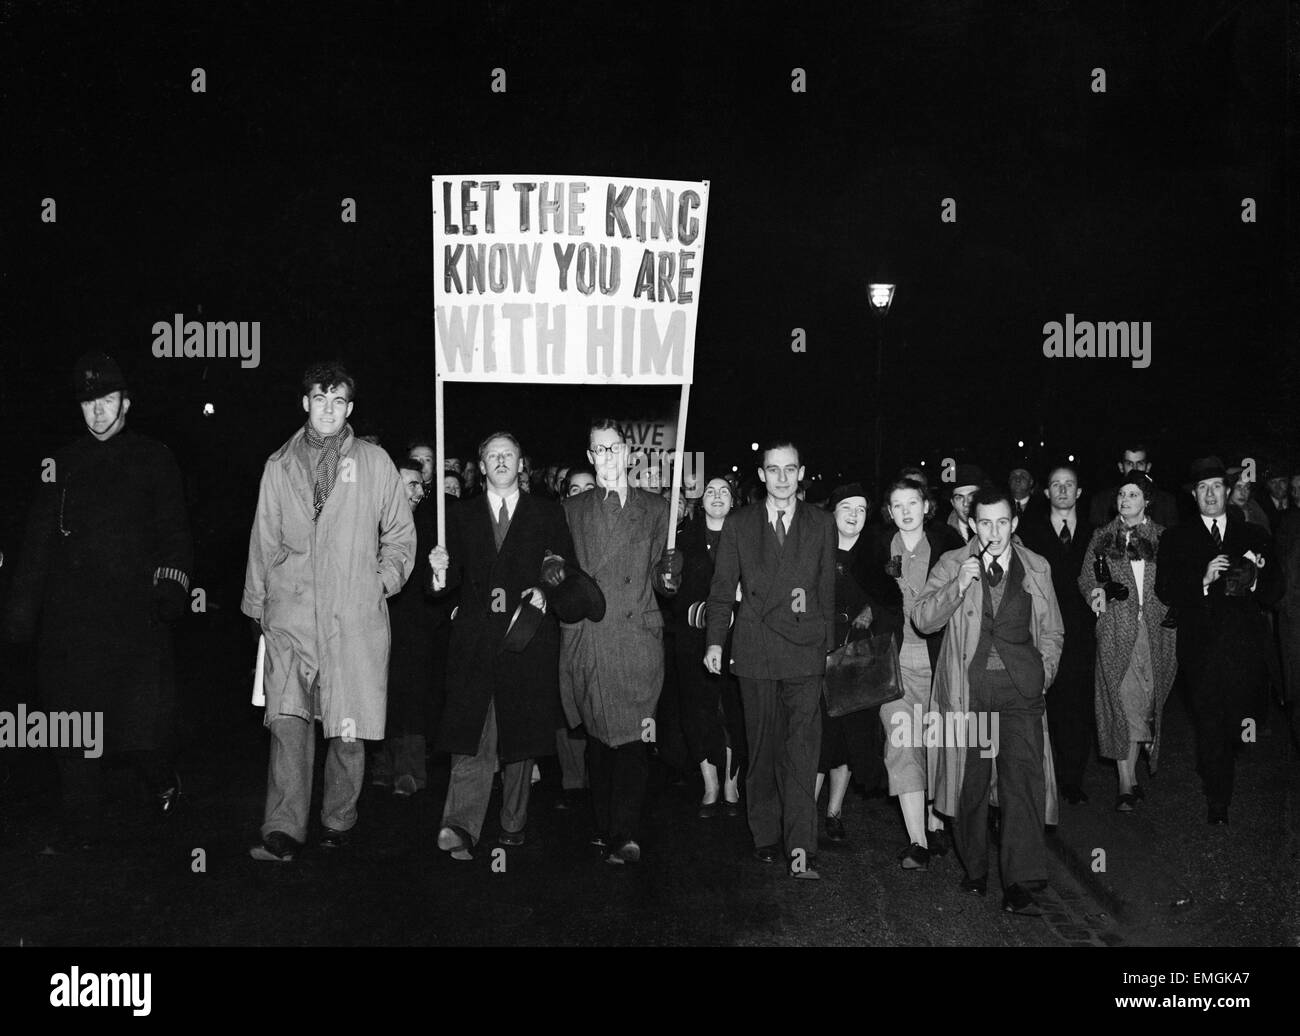 Le roi Édouard VIII Crise Abdication décembre 1936. Partisans Royal marche dans Londres avec une bannière qui se lit "Que le roi que vous êtes avec lui'. Banque D'Images